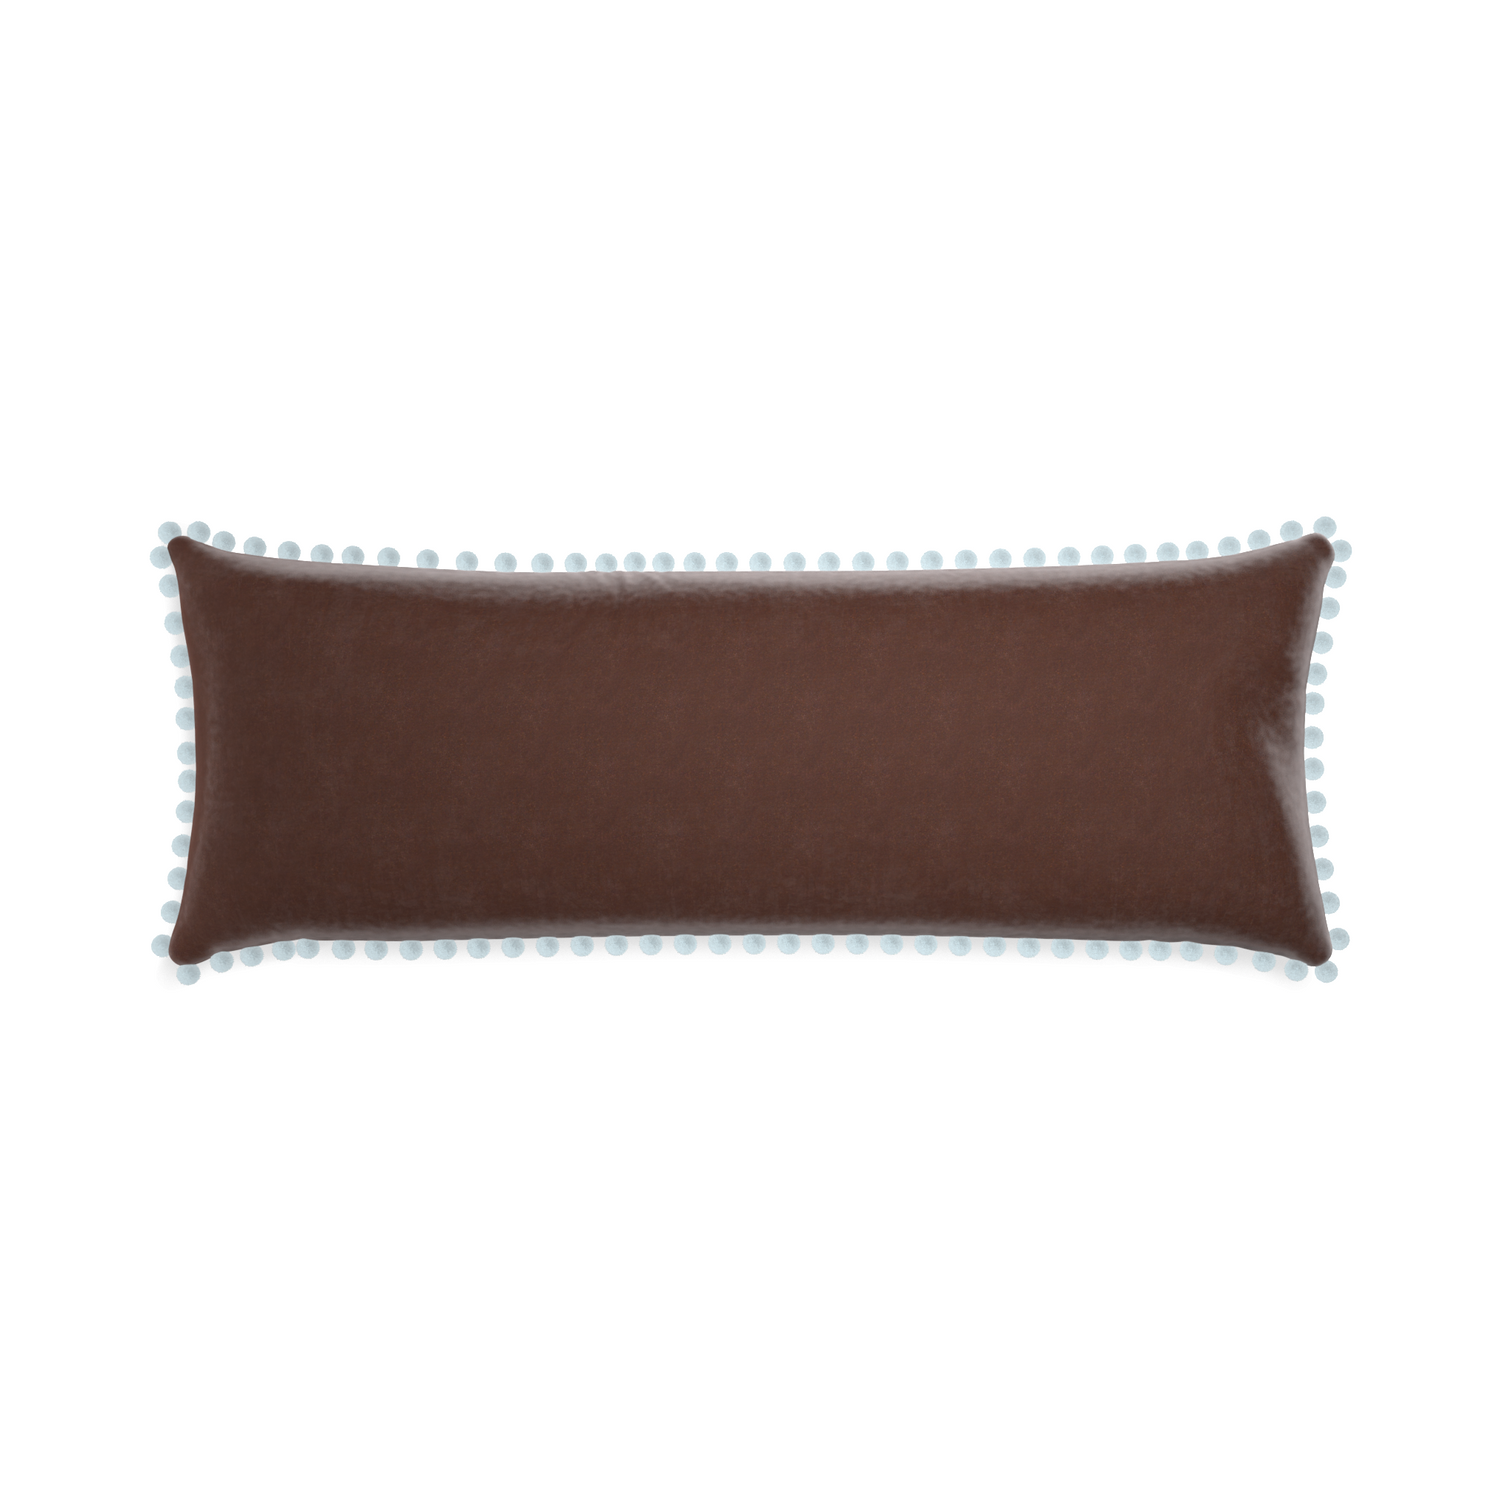 rectangle brown velvet pillow with light blue pom poms